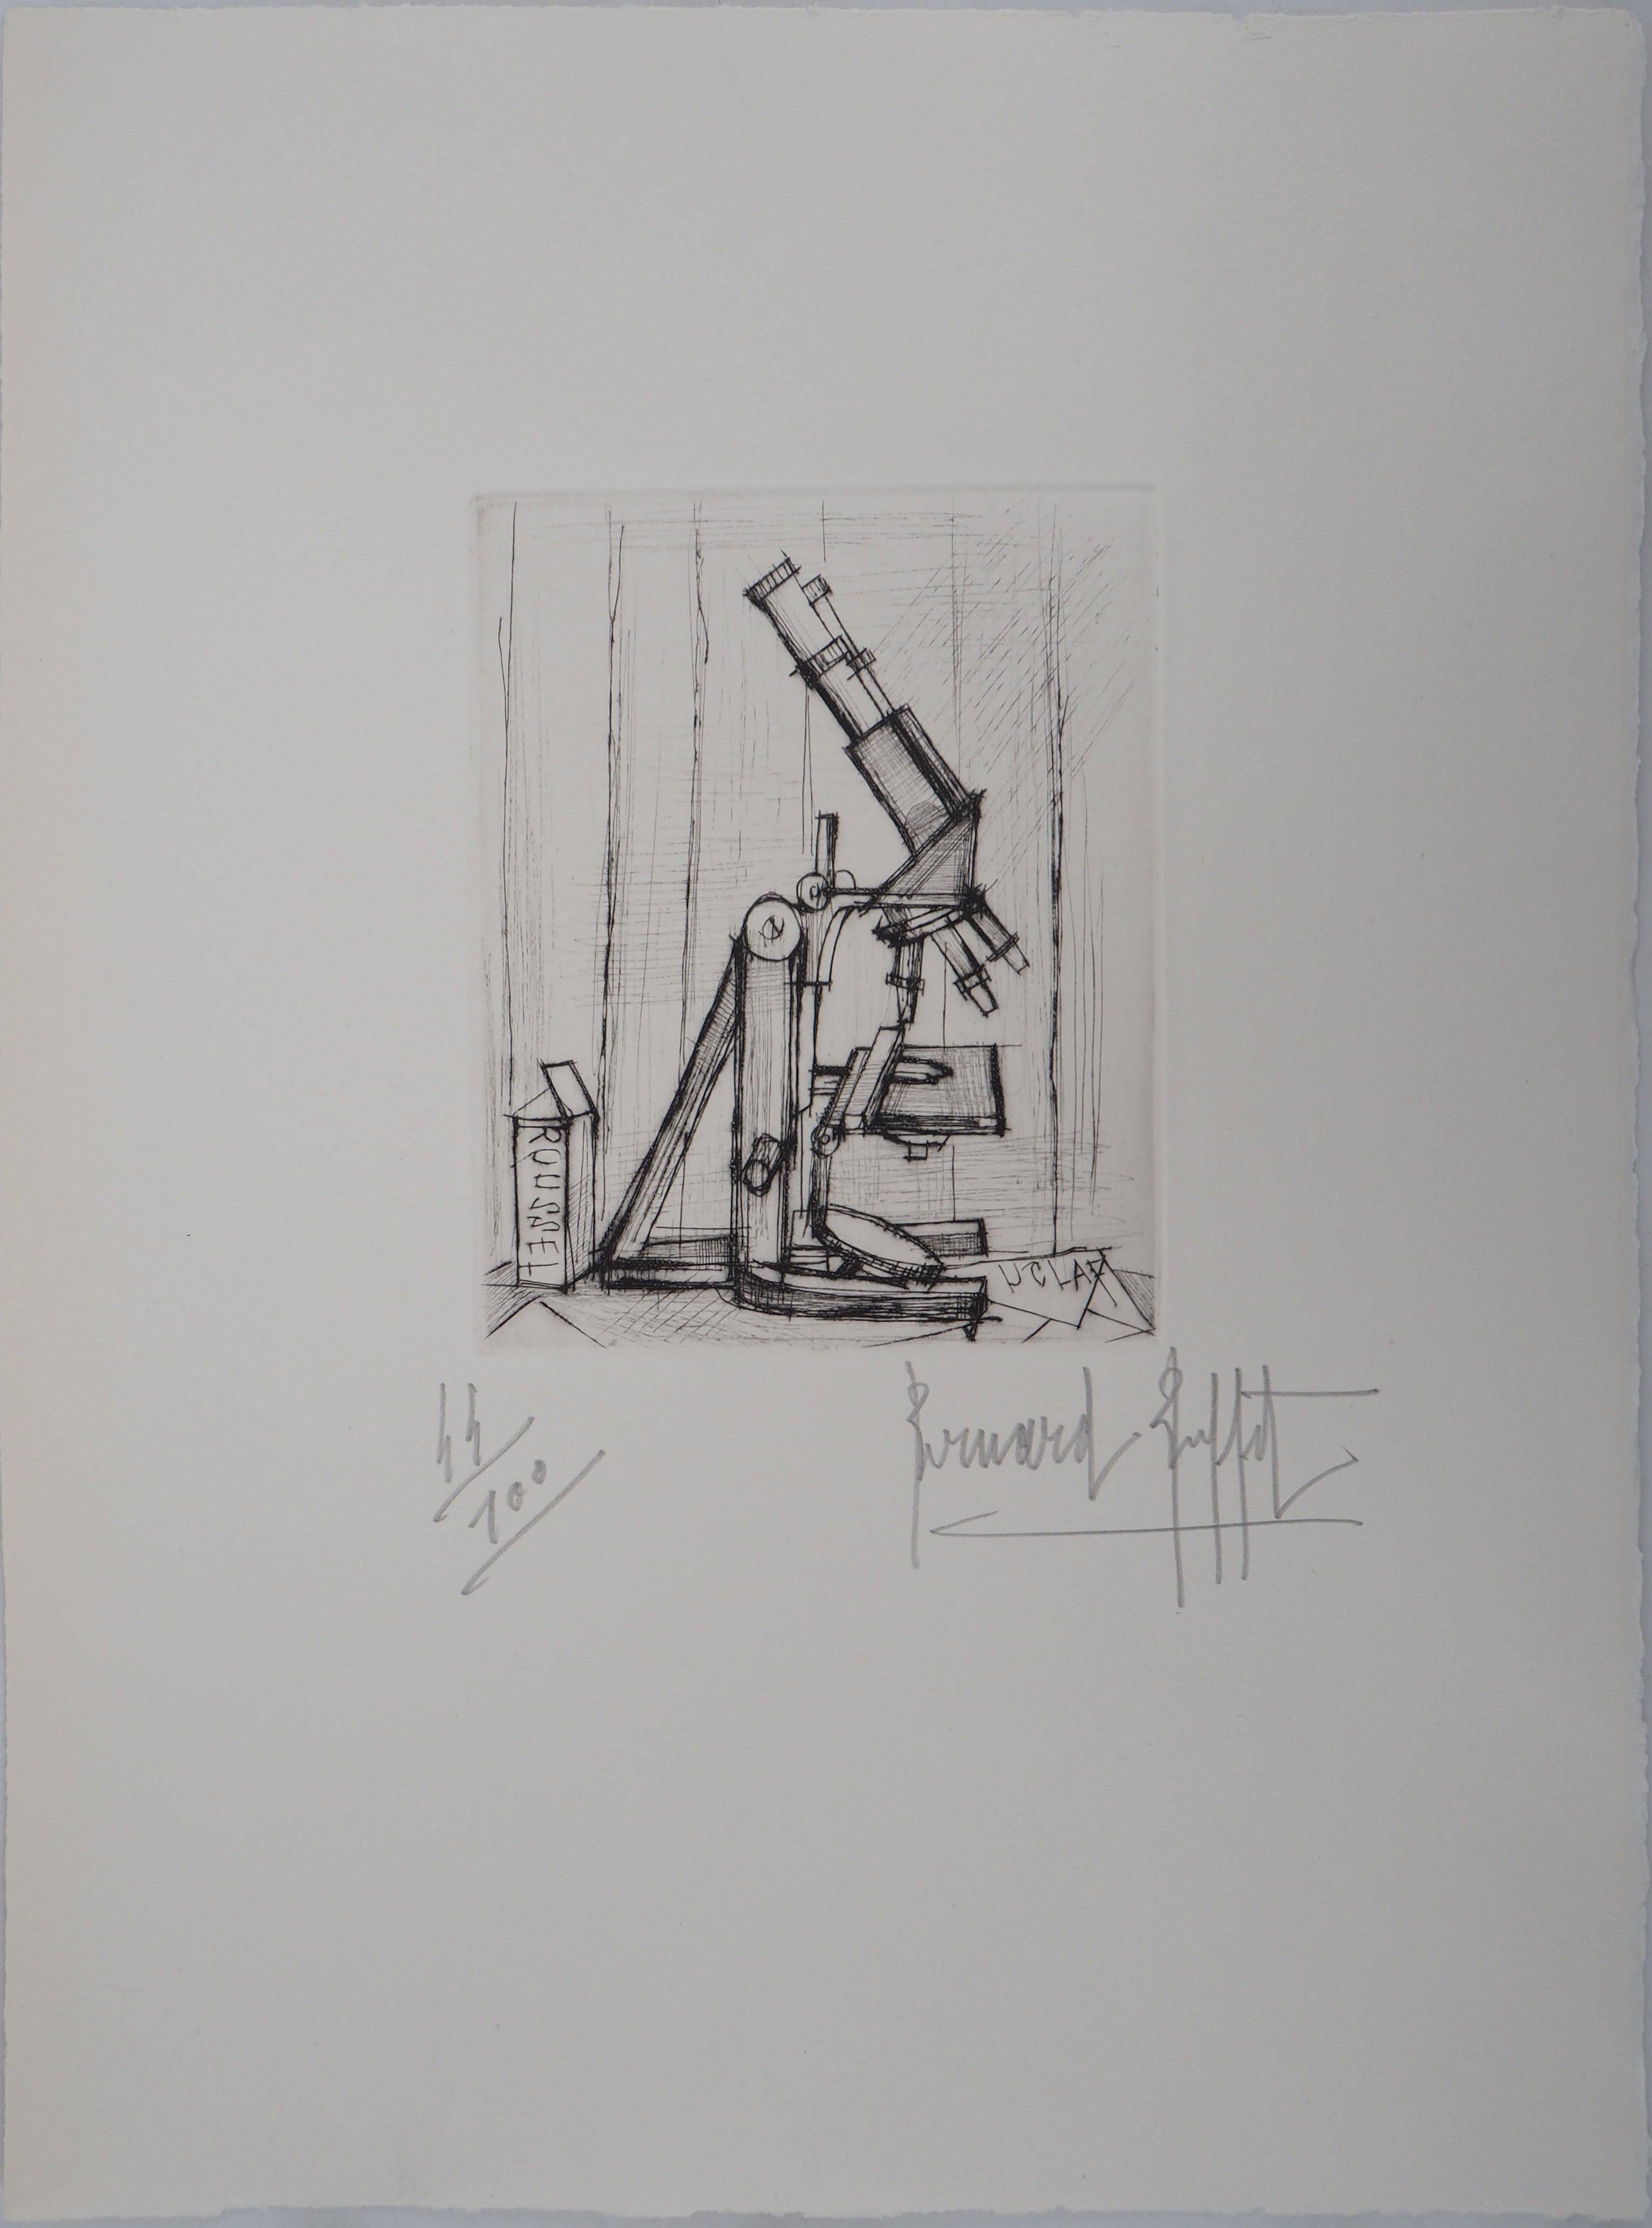 Microscope - Original Handsigned Etching - 1959 - Print by Bernard Buffet